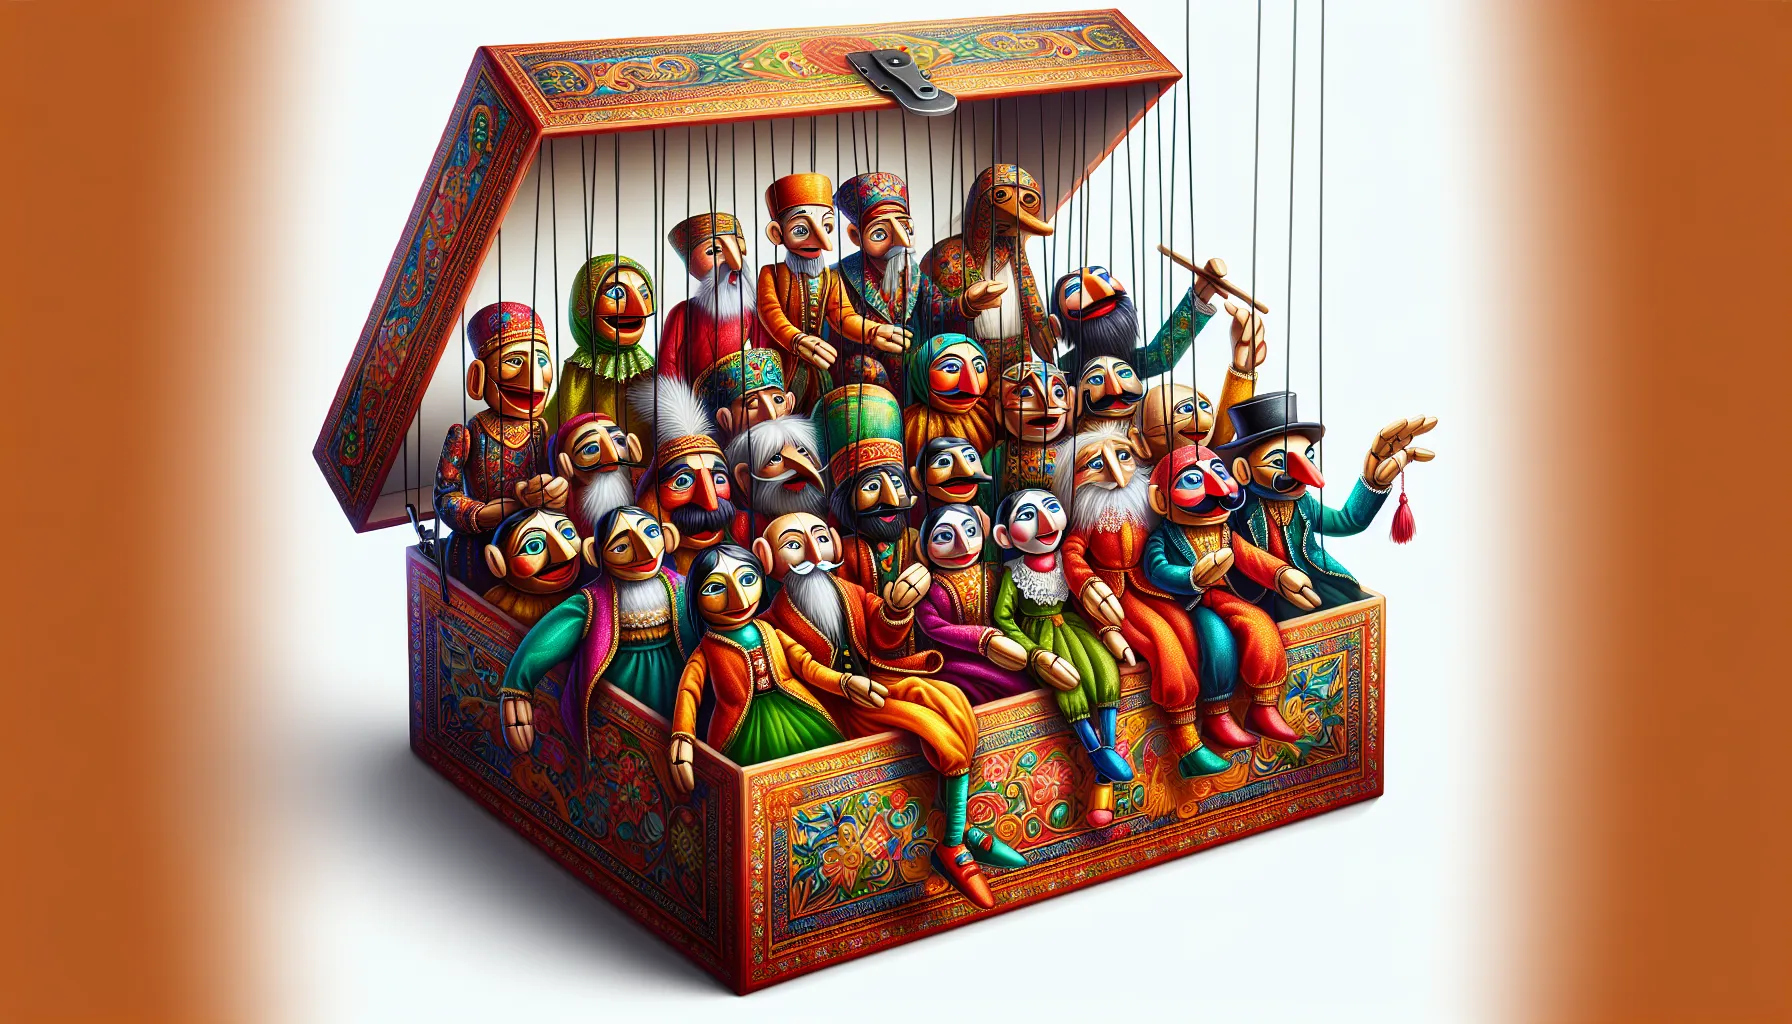 Uma caixa de fantoches é uma caixa onde são guardados e organizados os fantoches. Os fantoches são bonecos ou marionetes que são usados para contar histórias ou encenar peças teatrais. Essa caixa é geralmente feita de madeira ou papelão e possui compartimentos ou divisórias para armazenar cada fantoche de forma organizada. Ter uma caixa de fantoches facilita o